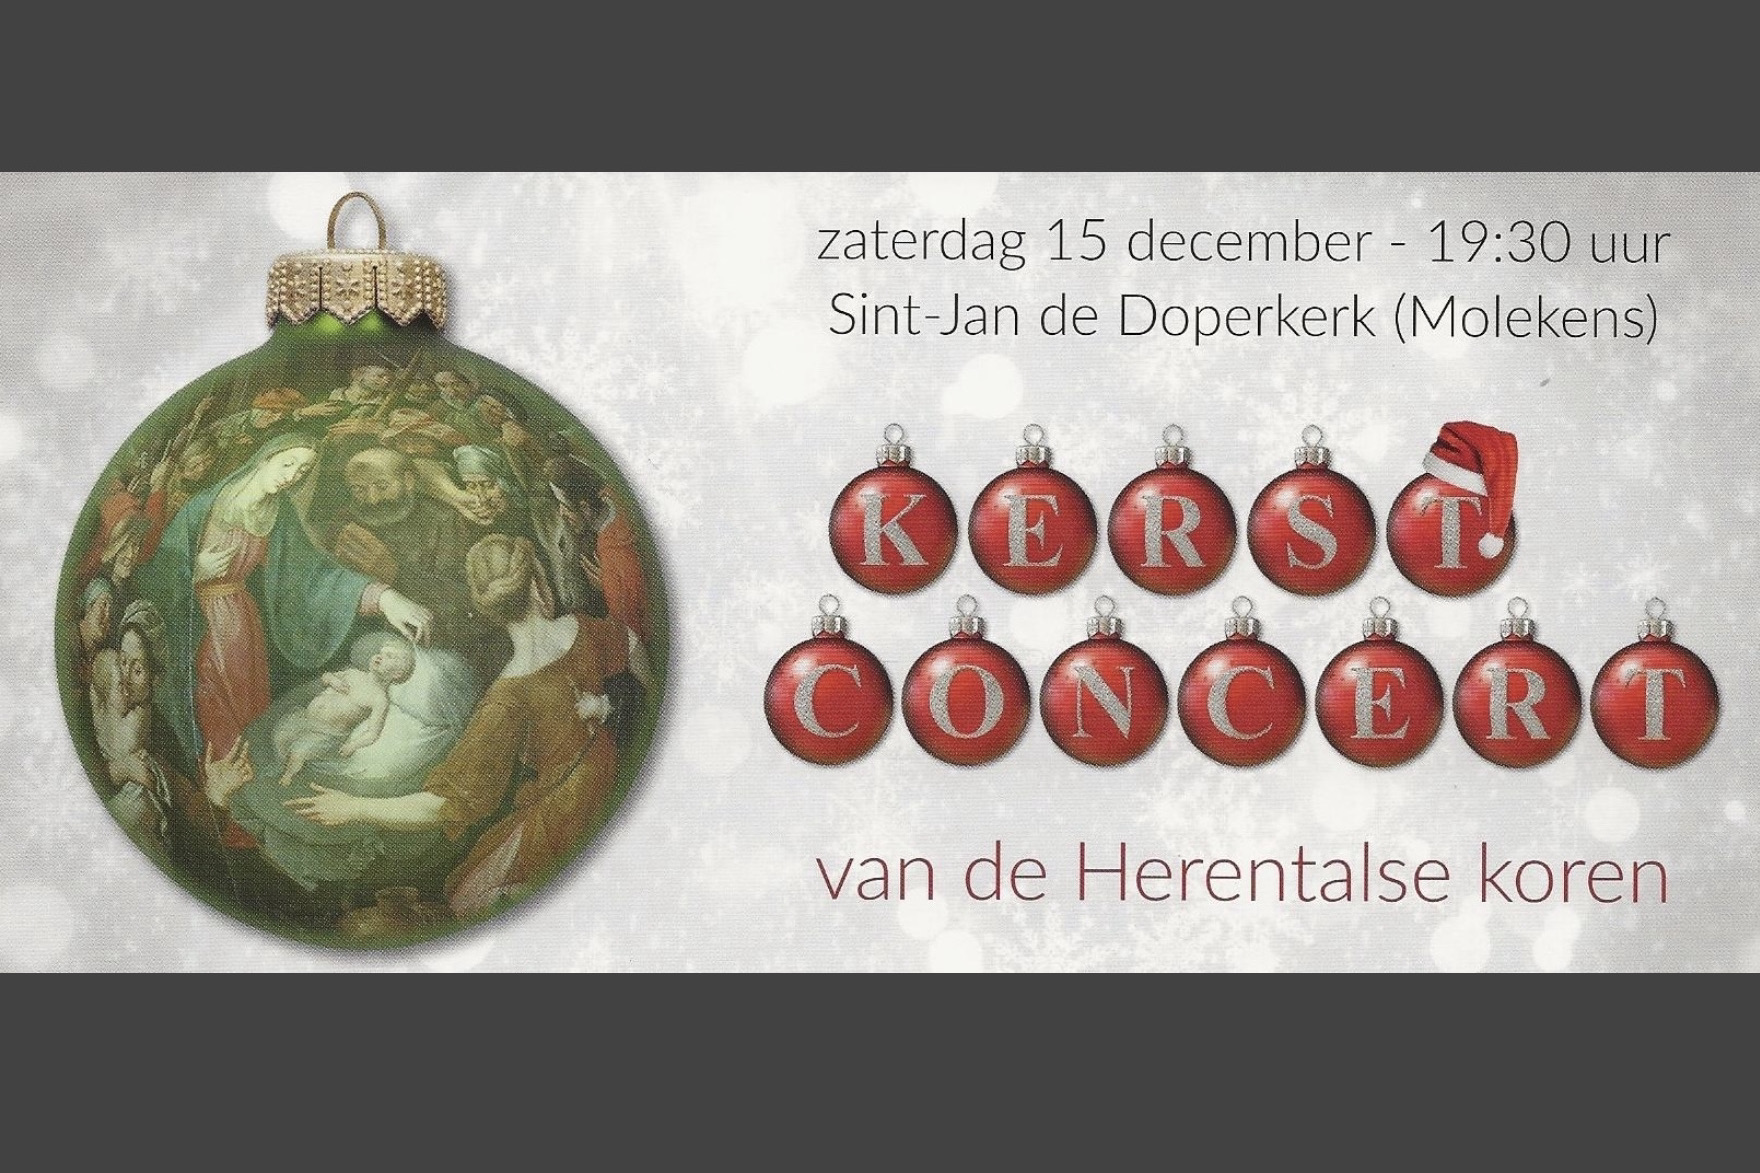 Kerstconcert Herentalse koren 15 december 2018